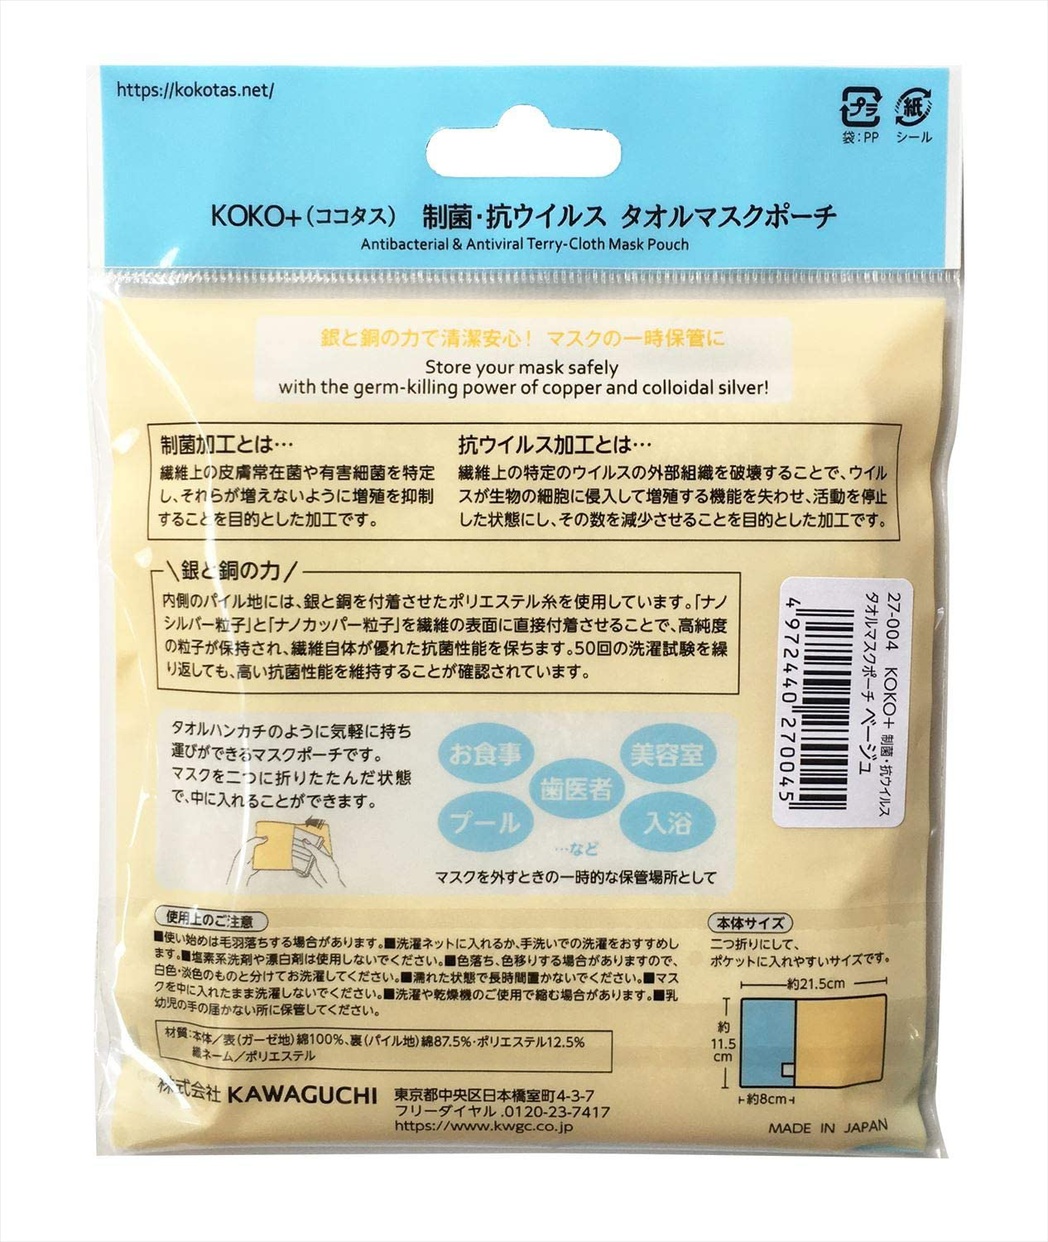 KOKO+(ココタス) タオル マスク ポーチの商品画像2 